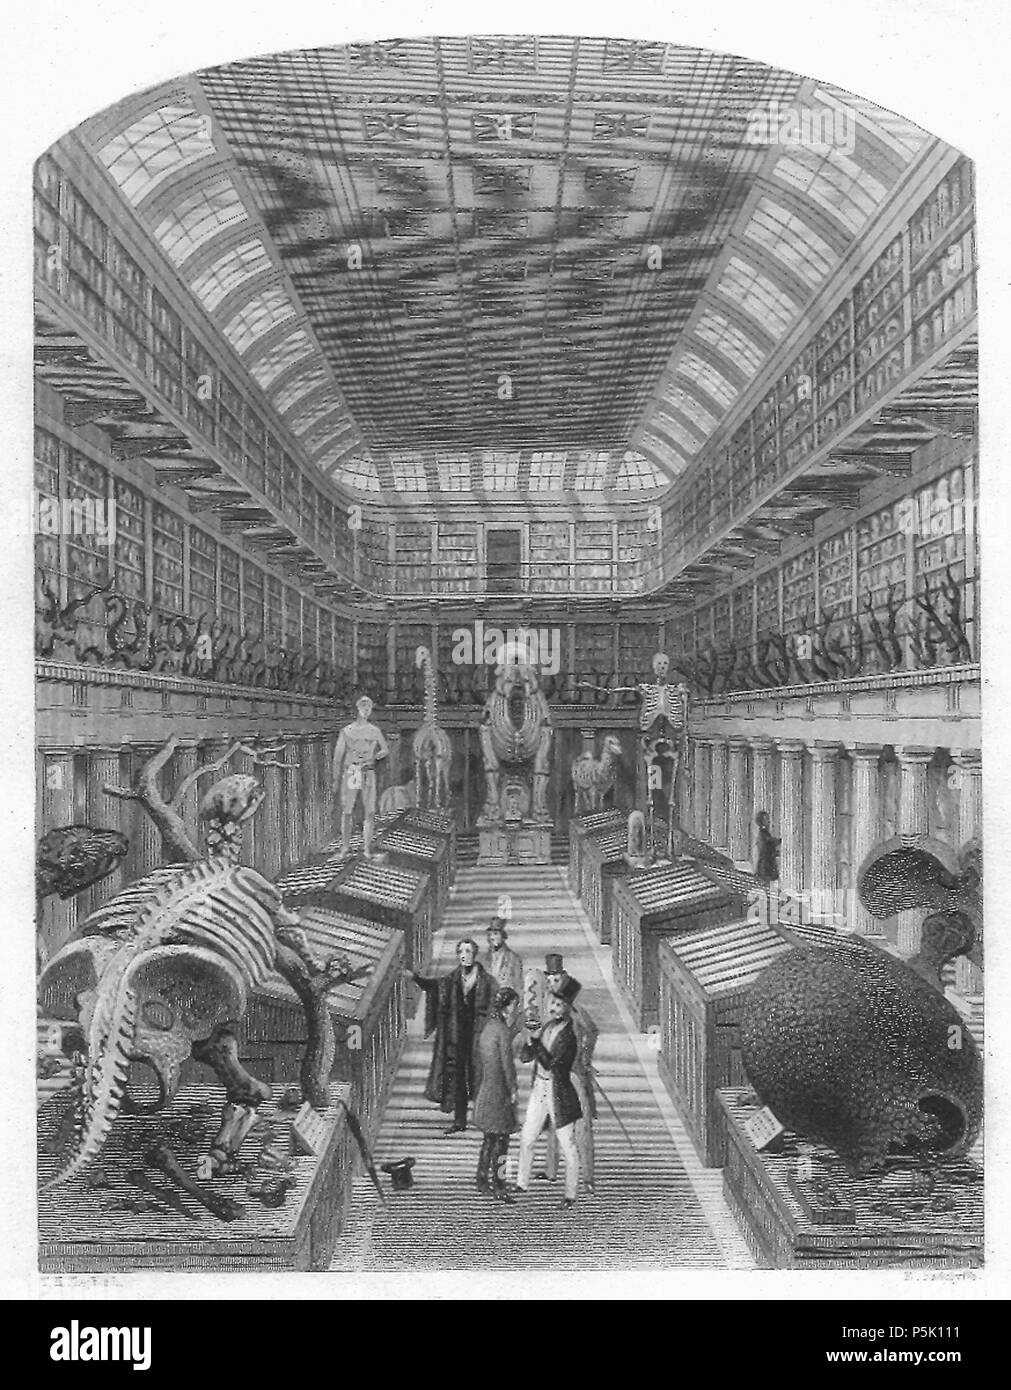 N/A. Anglais : Hunterian Museum, gravure sur bois . 1853. Sheperd et Radclyffe 29 1853 - le Hunterian Museum Banque D'Images